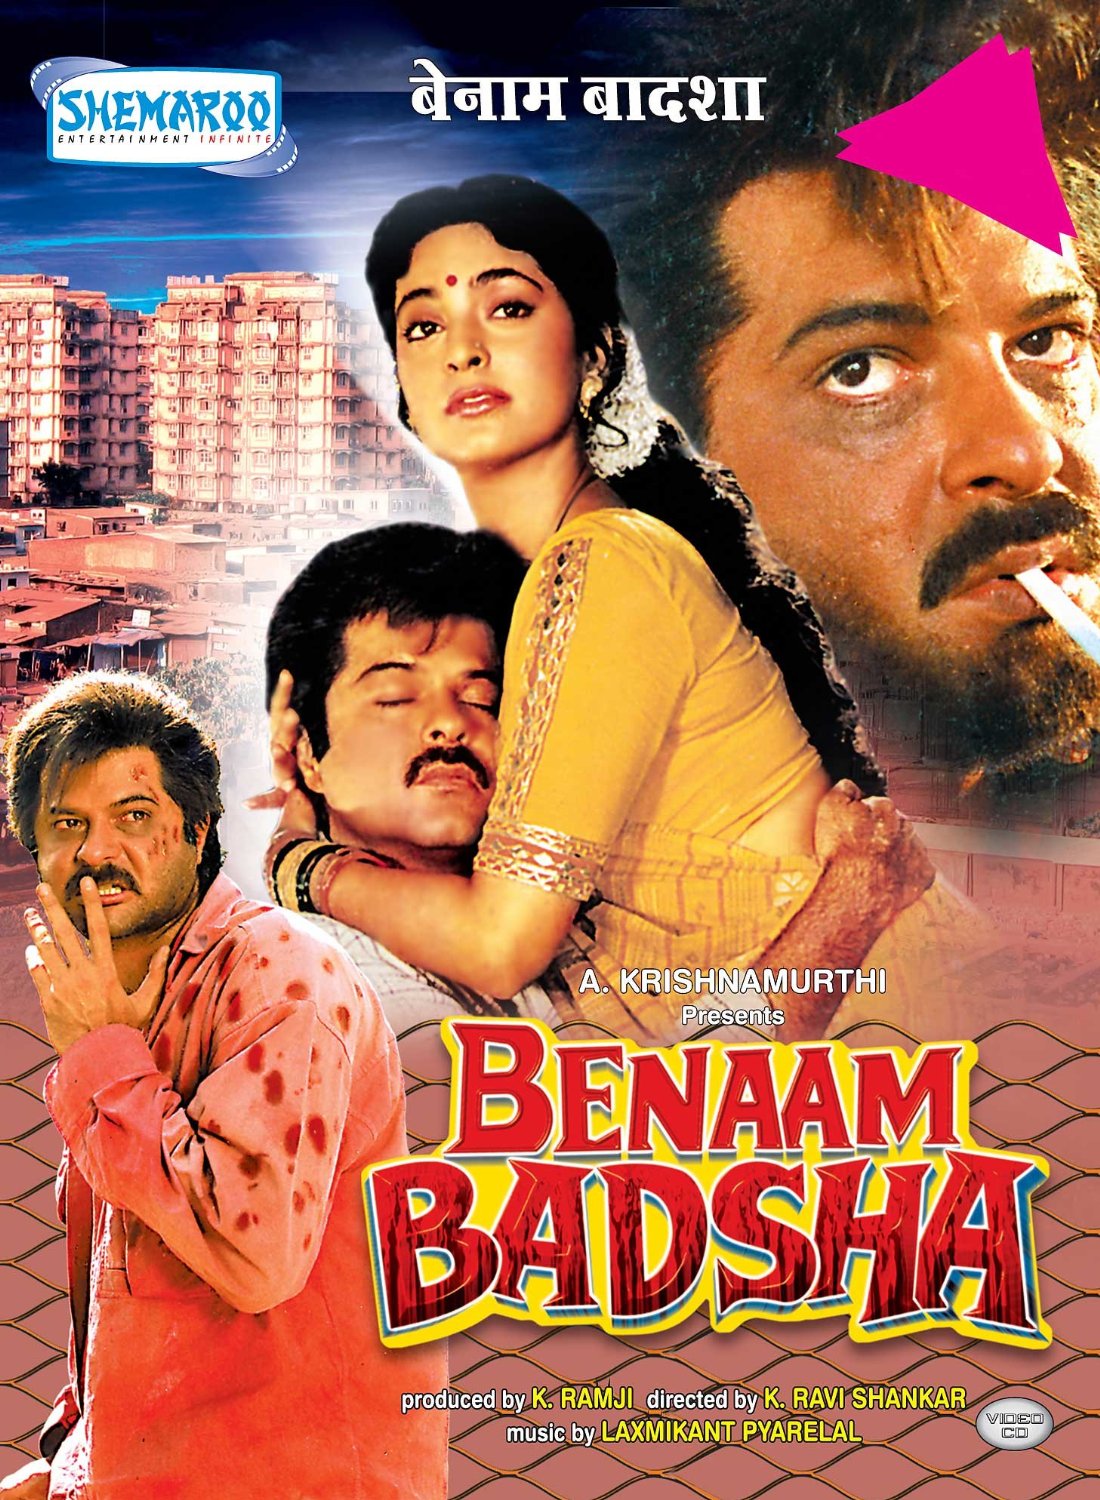 فيلم Benaam Badsha 1991 مترجم